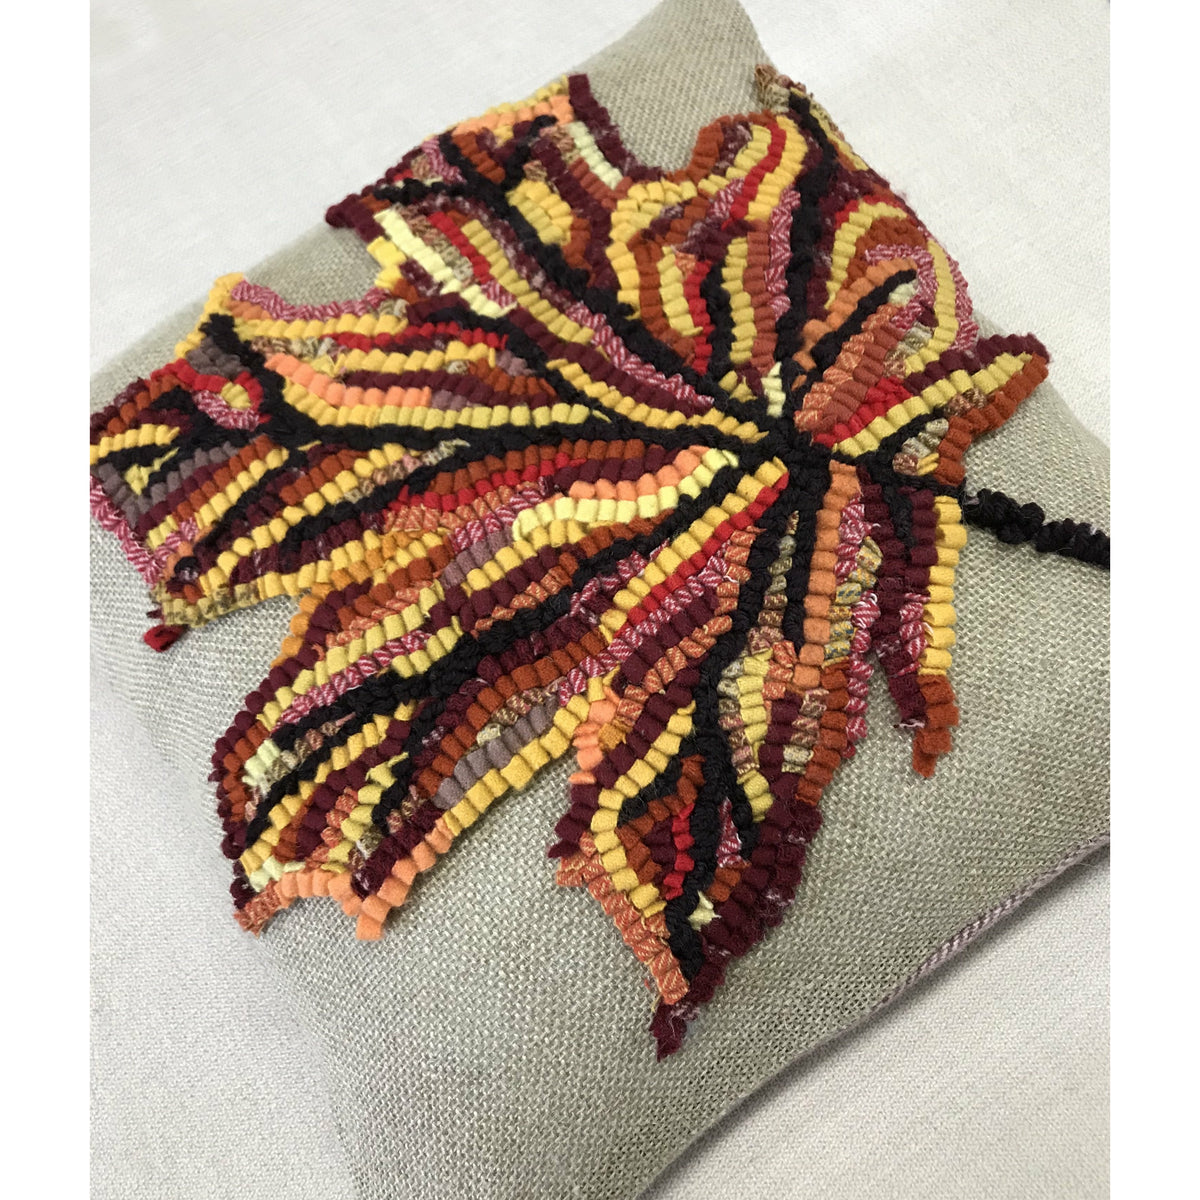 DIY Rug Kit. Craft Wool Rug Kit. Loop Stitch Rug Knitting Pattern